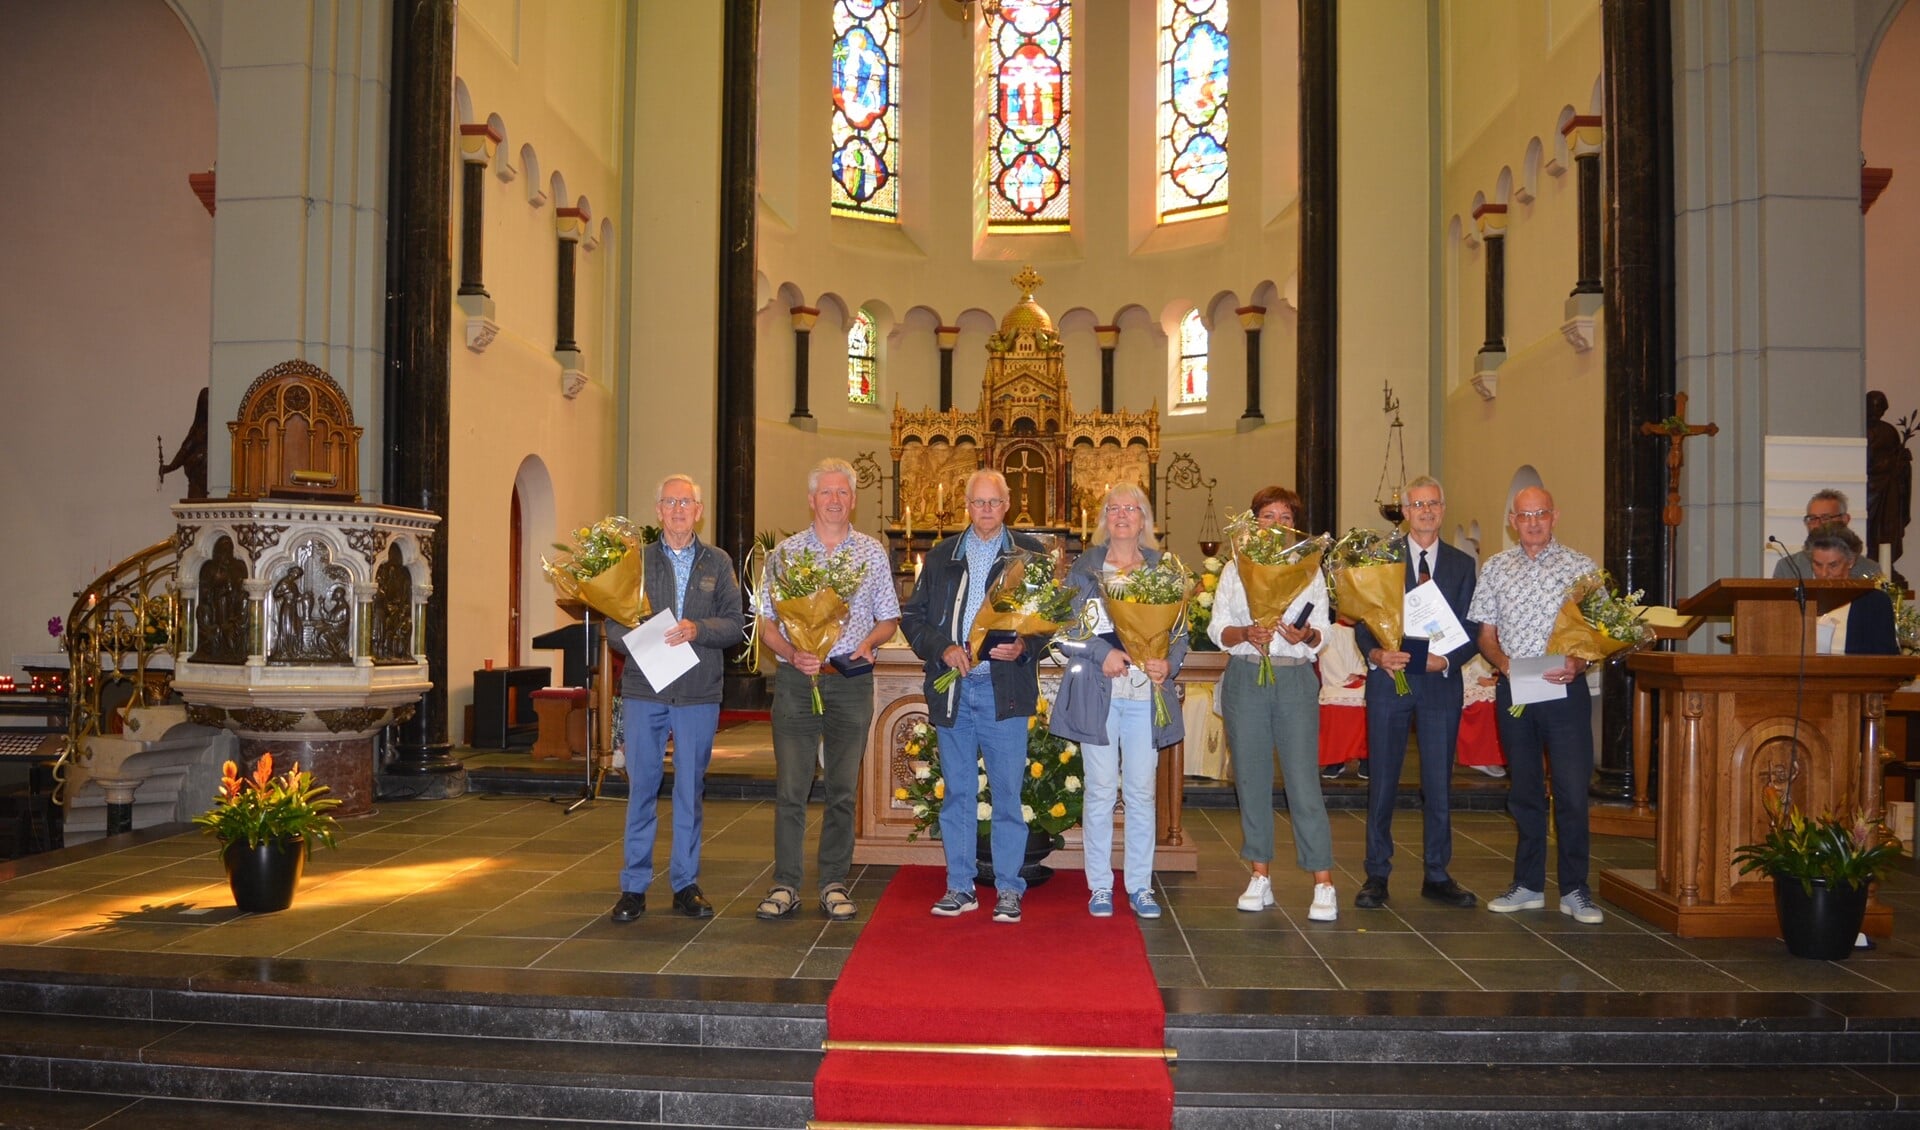 De voorzangers met parochiepenning en bloemen op de foto, gemaakt door Charles van der Mast.